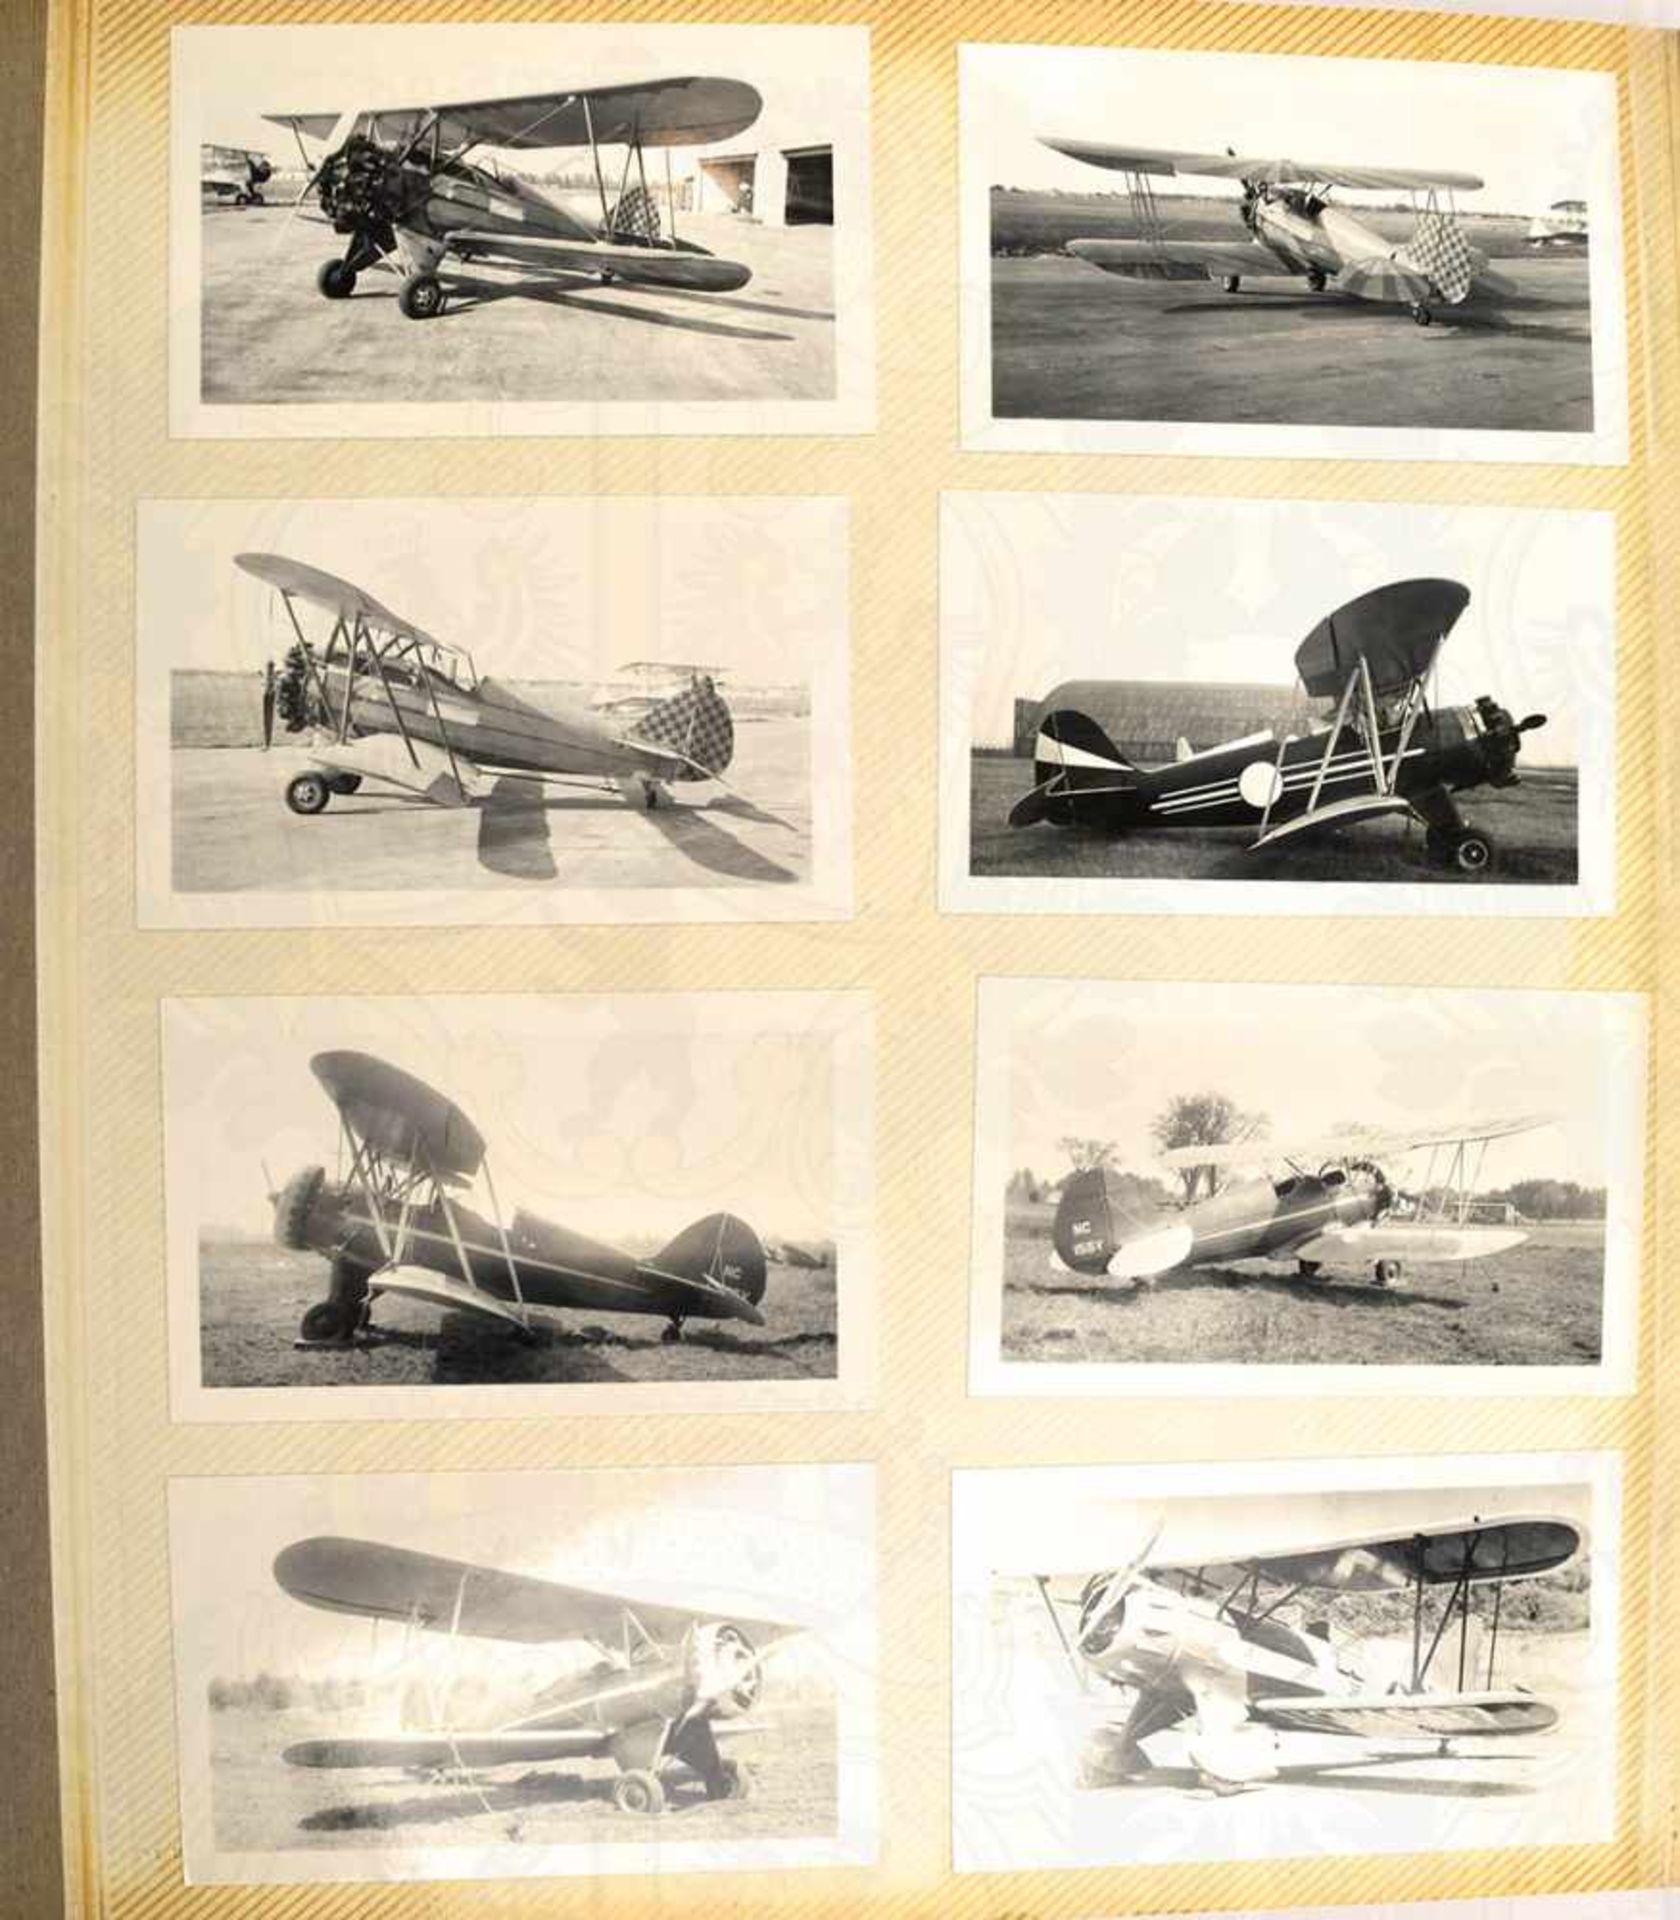 2 FOTOALBEN, mit 320 Fotos v. Aufklärungs-, Trainings-, Sport- und Charterflugzeugen etc., meist - Bild 4 aus 5